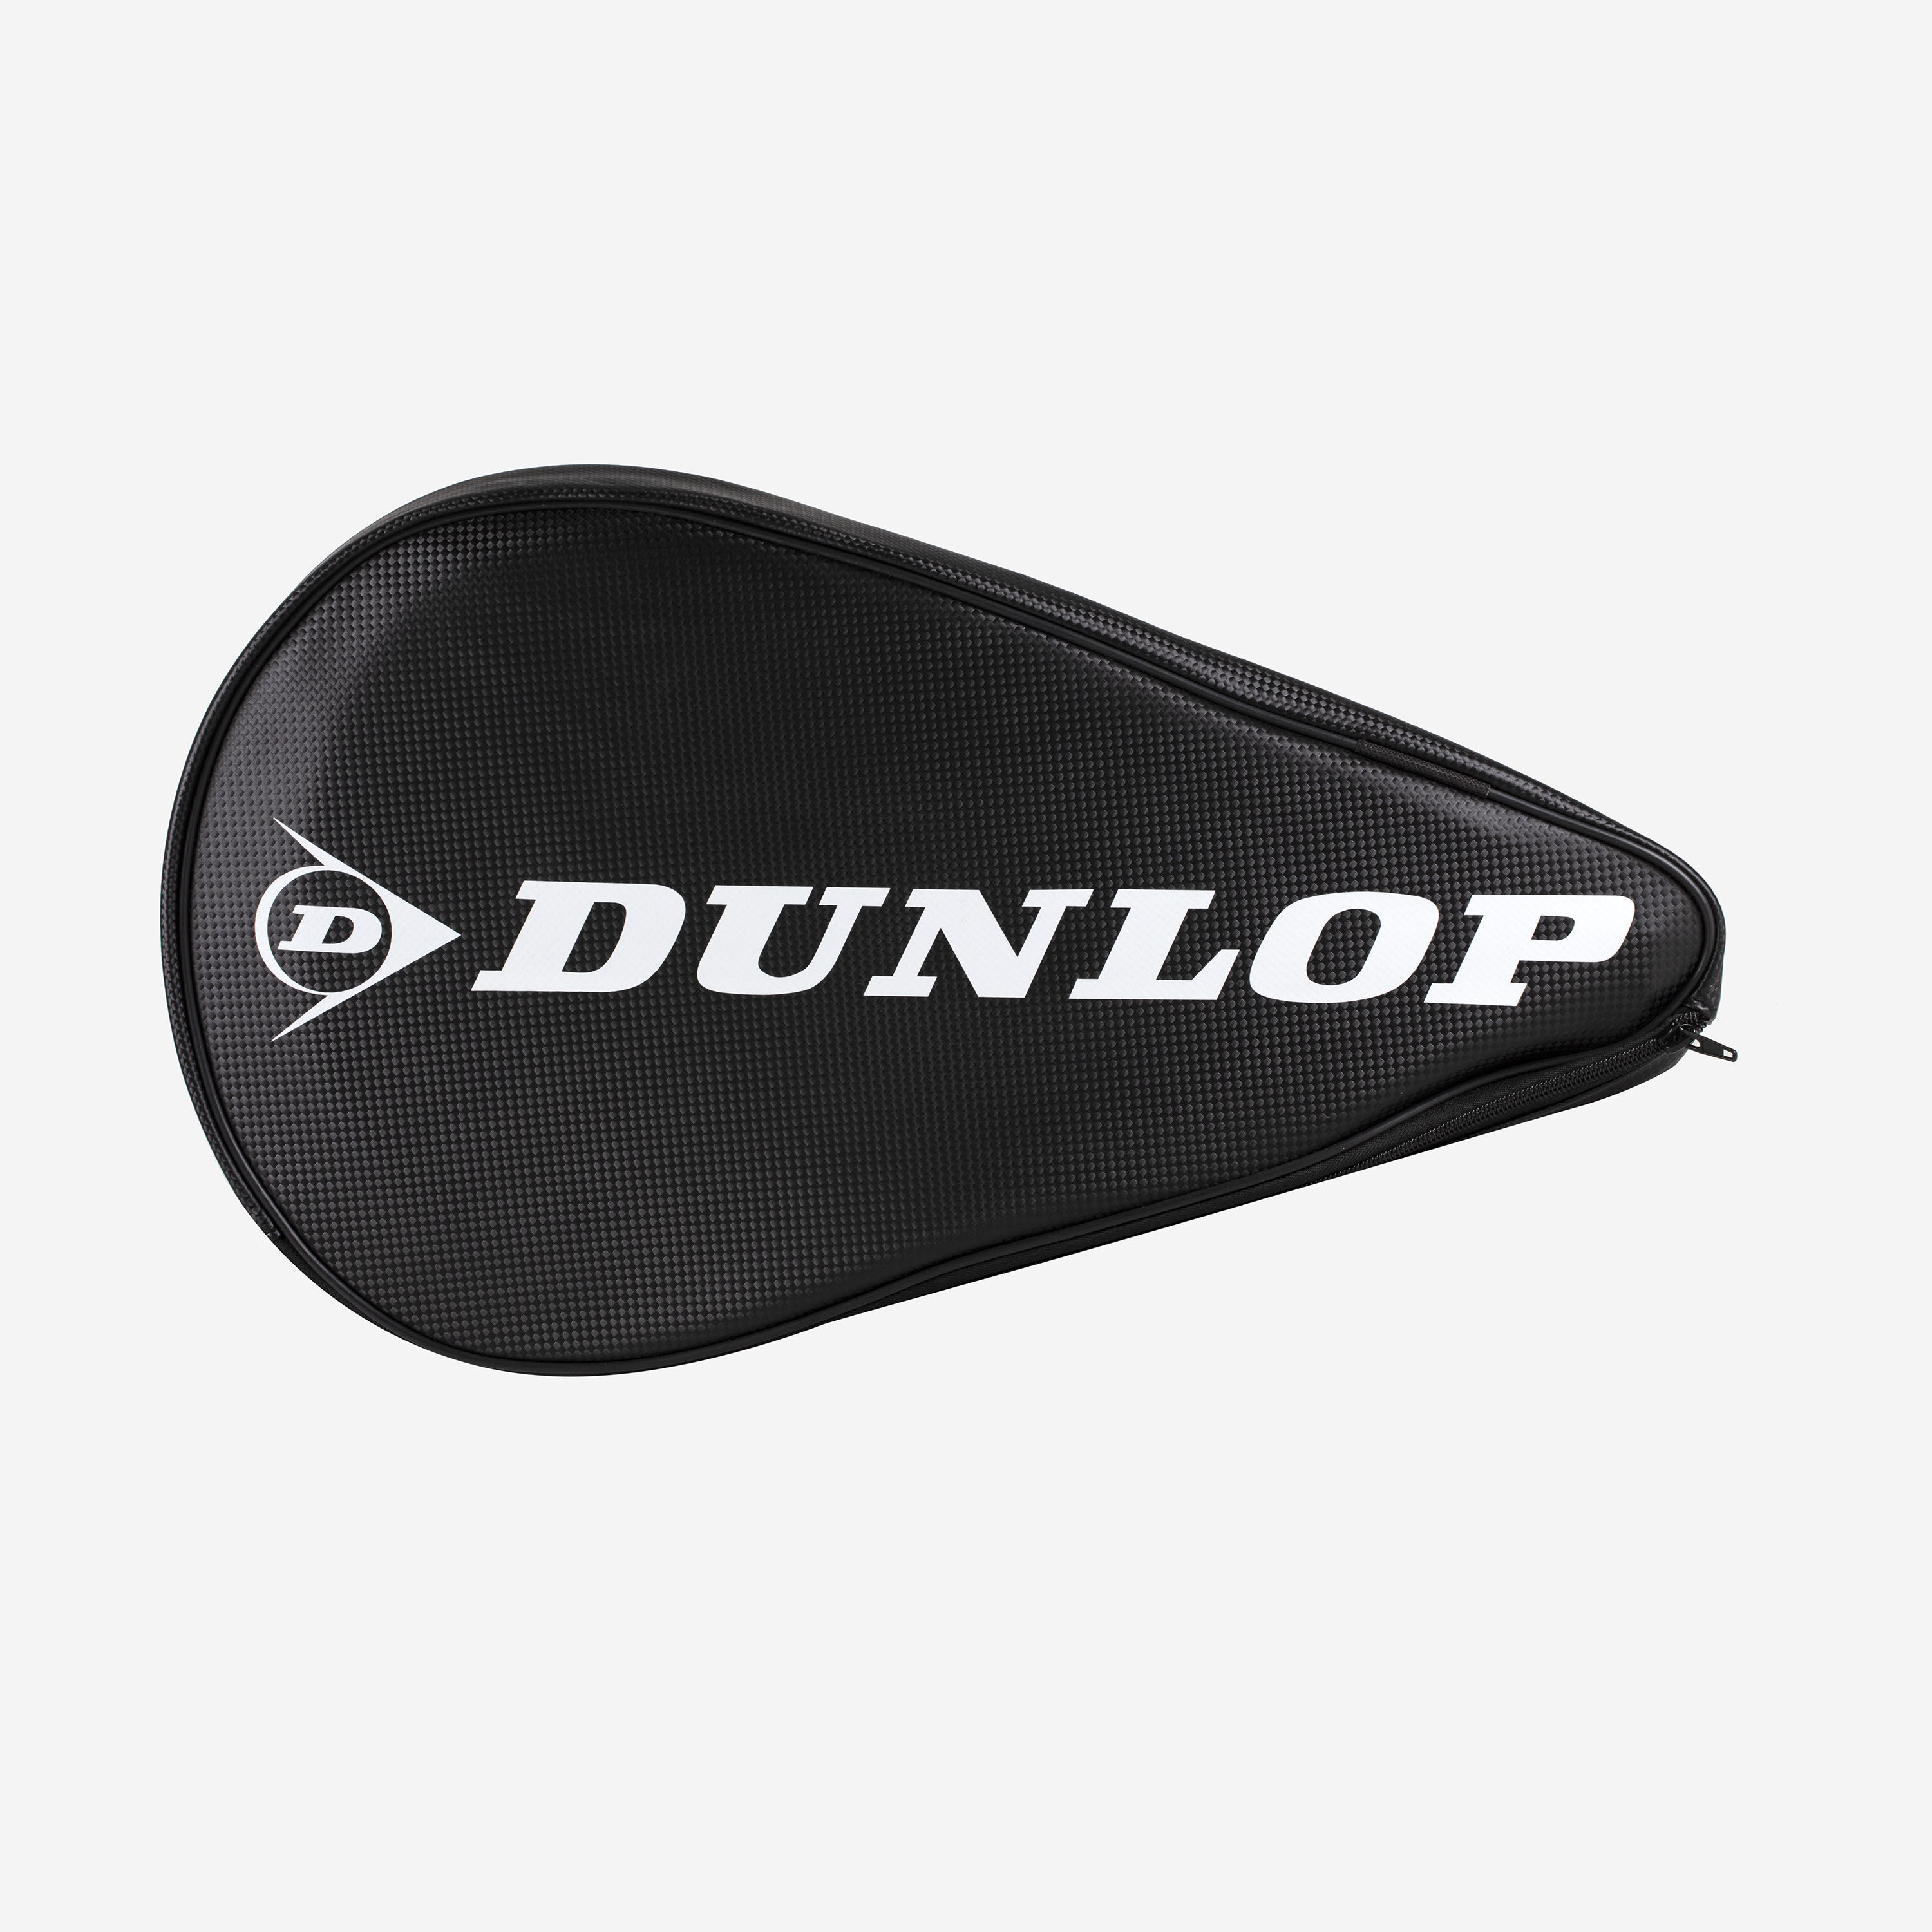 Raquette Padel Dunlop + housse